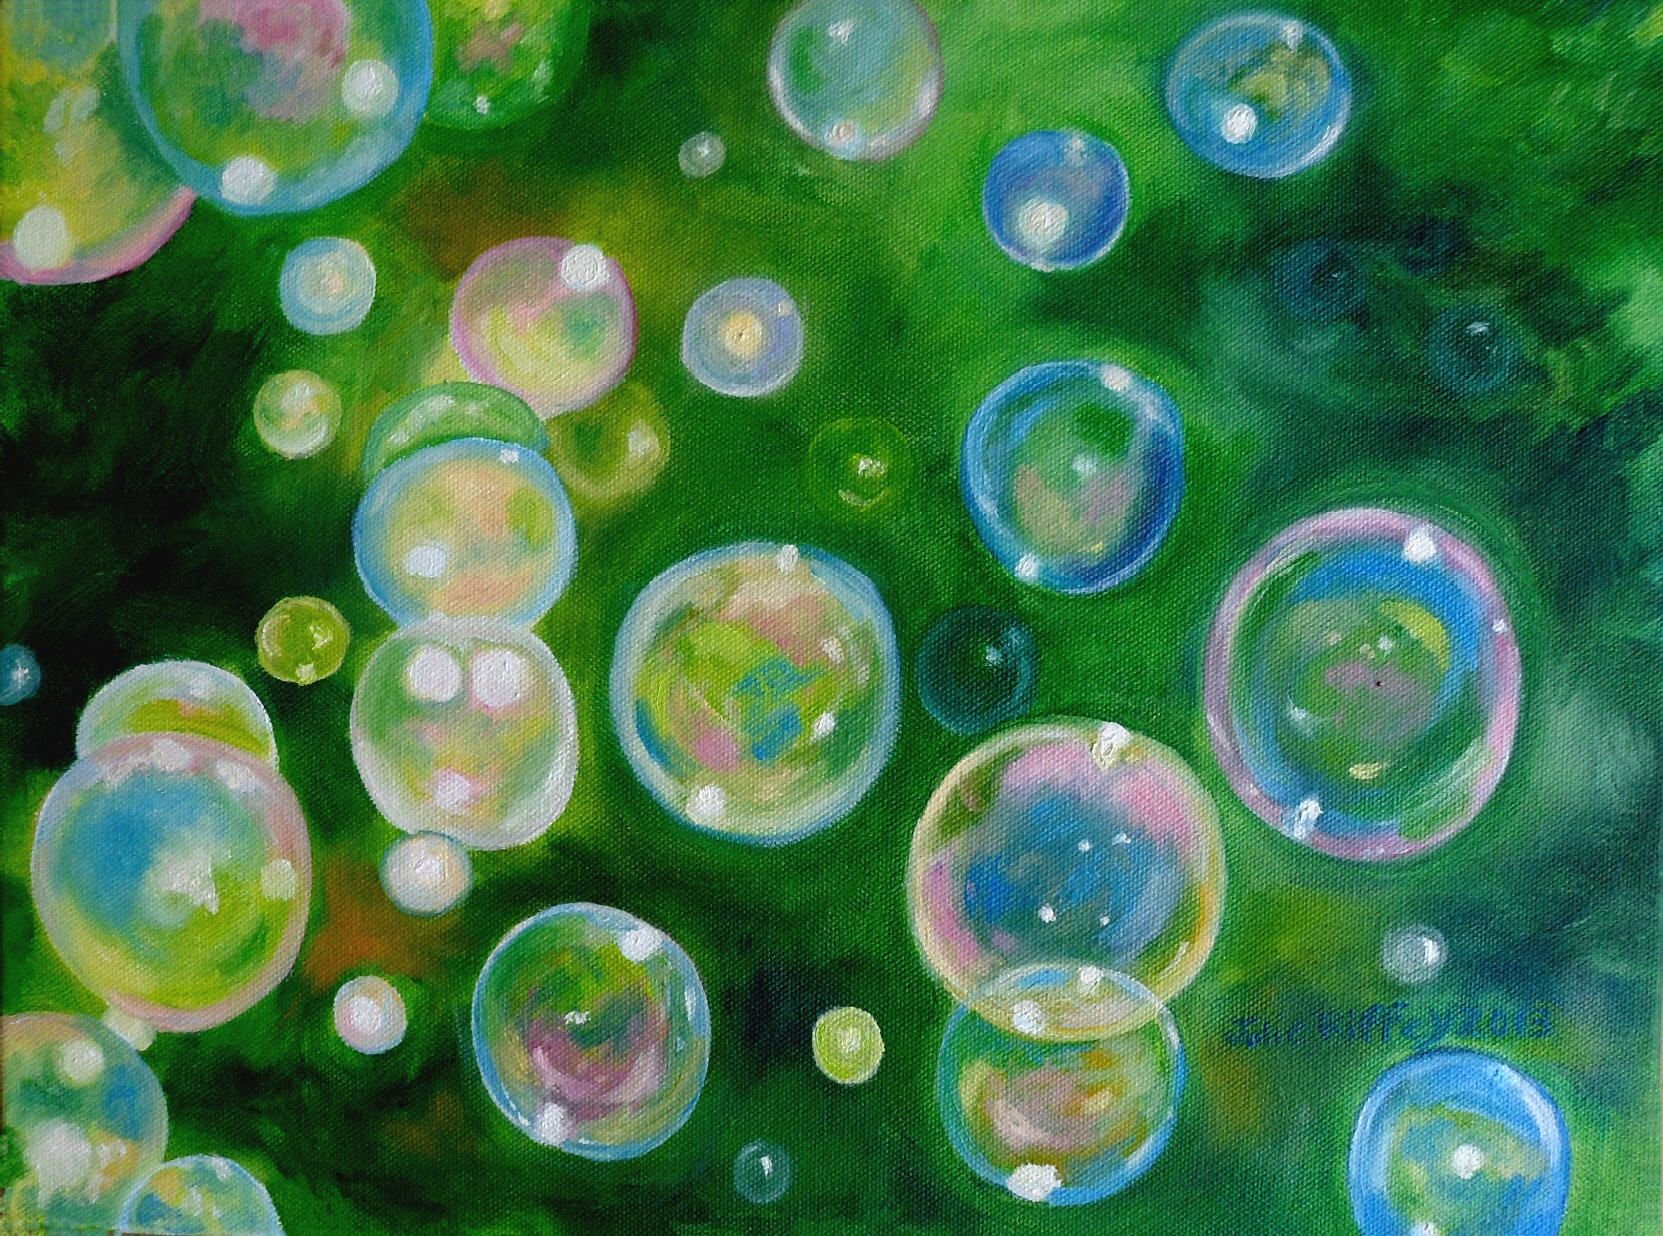 Покажи картинку пузыри. Мыльные пузыри. Цветные мыльные пузыри. Рисование мыльными пузырями. Мыльные пузыри в живописи.